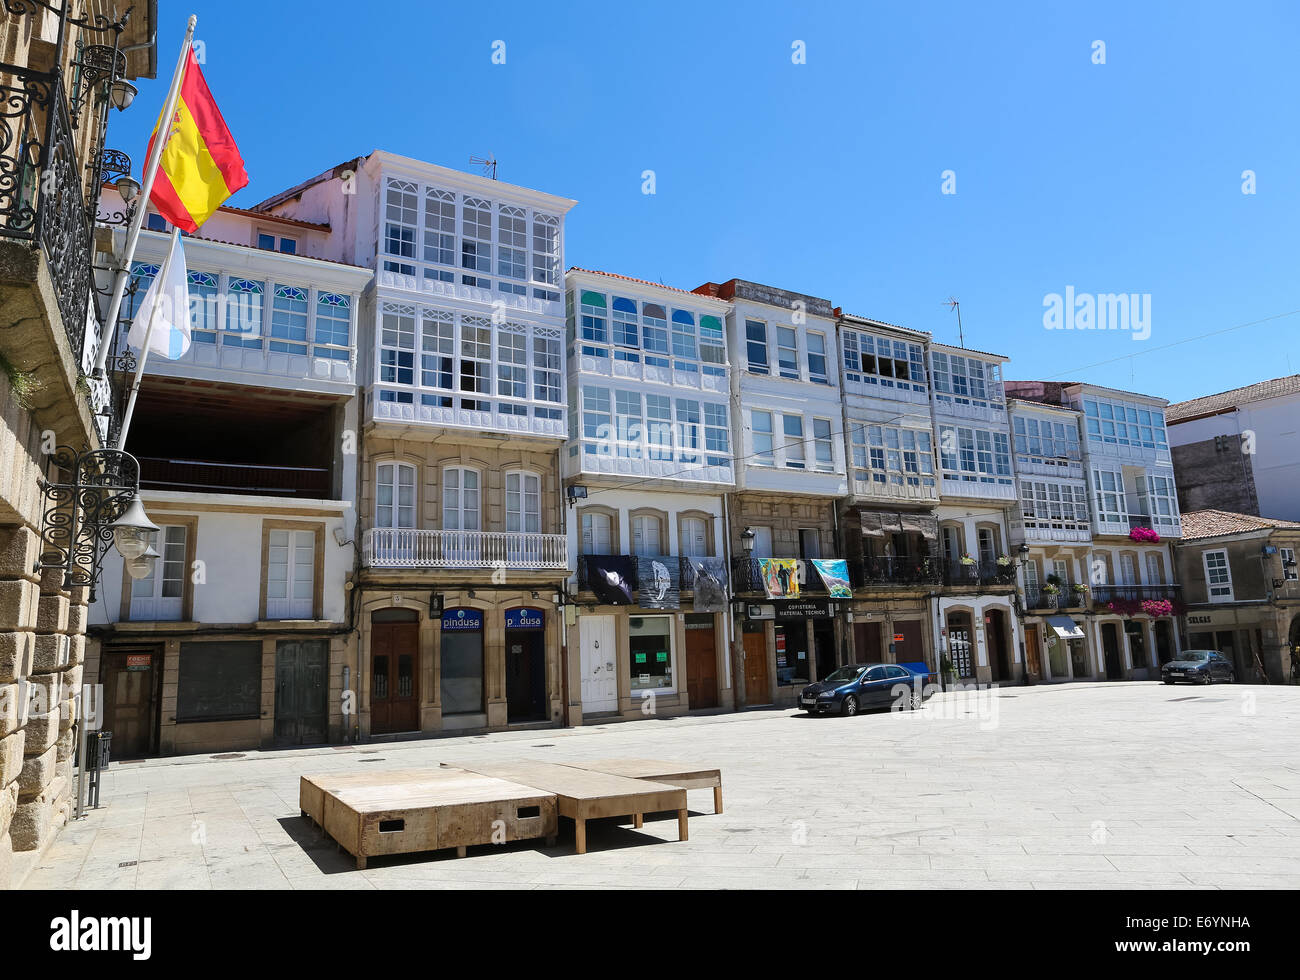 BETANZOS, Spagna - 30 luglio 2014: architettura storica presso il Plaza Constitucion con i tipici balconi in vetro nel centro storico di Foto Stock